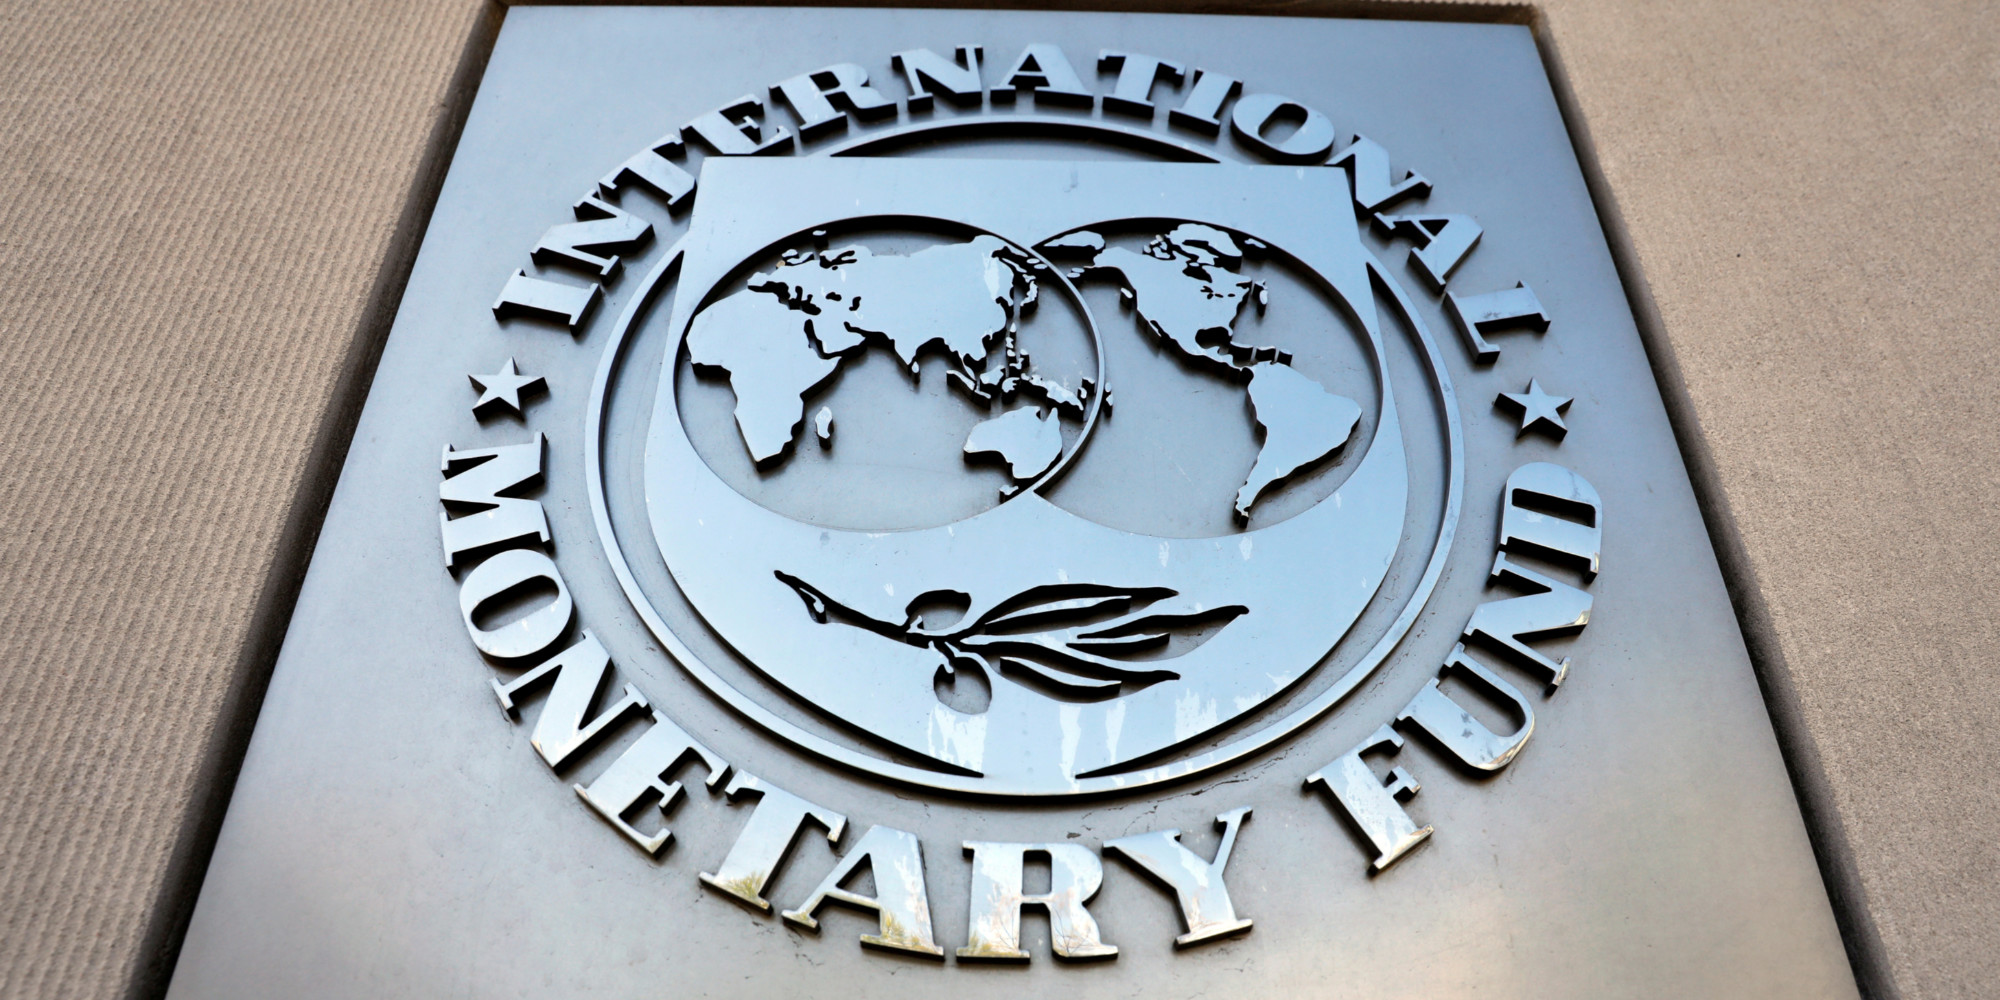 L'inflation devrait se maintenir plus longtemps à un niveau élevé, prévient le FMI